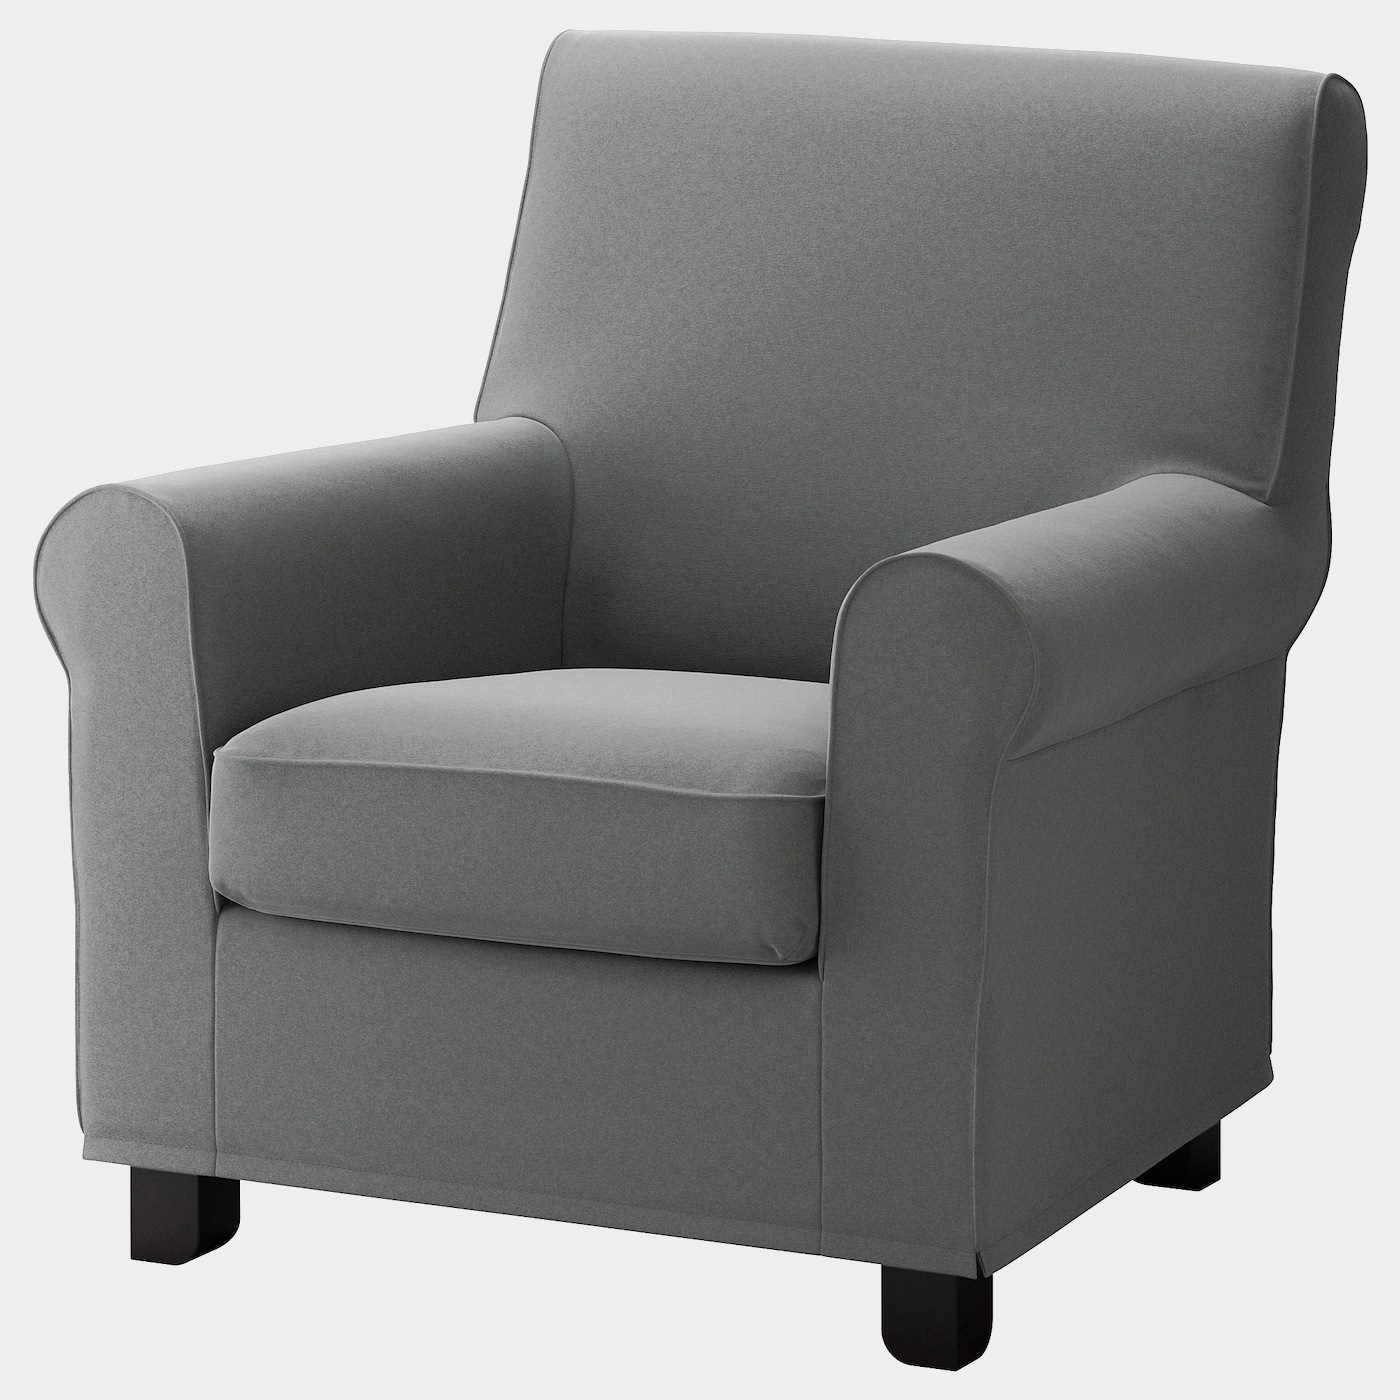 GRÖNLID Sessel  - Sessel & Récamieren - Möbel Ideen für dein Zuhause von Home Trends. Möbel Trends von Social Media Influencer für dein Skandi Zuhause.